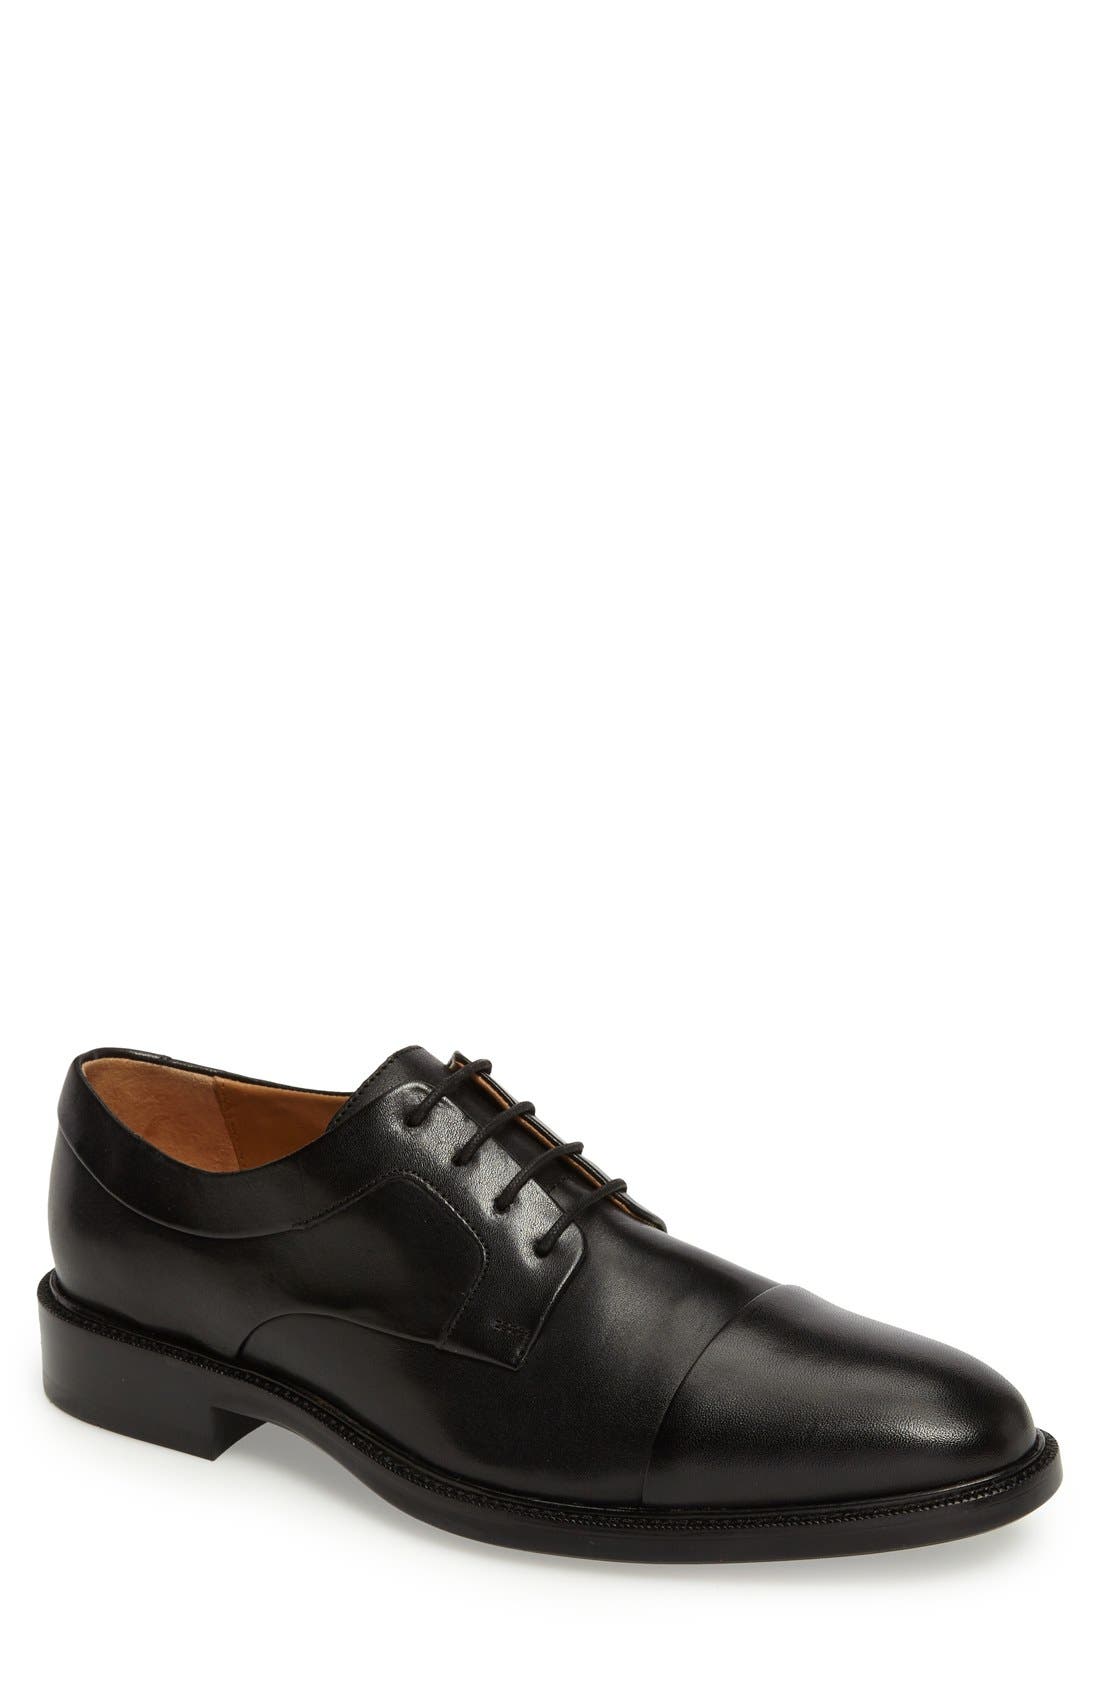 black dressing shoes for men